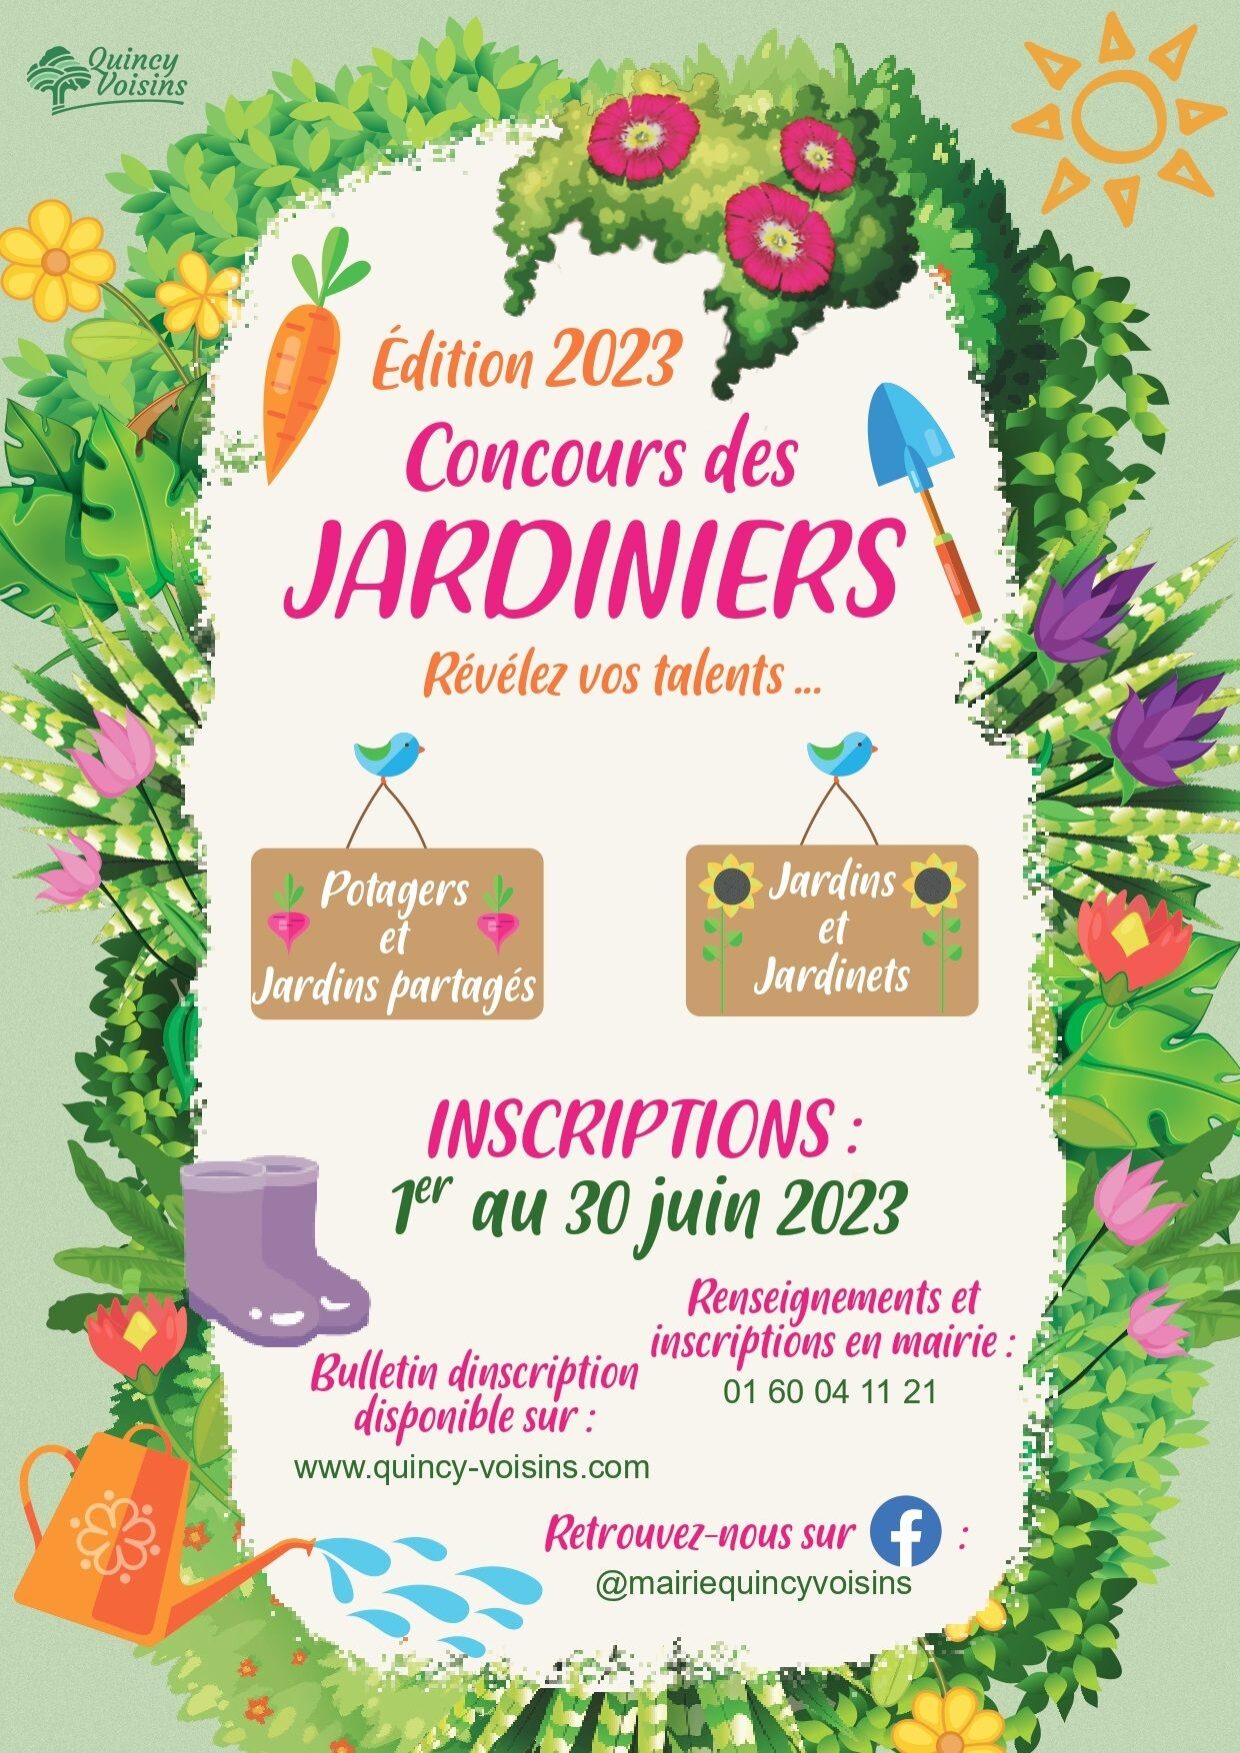 Lancement du concours des jardiniers : jeudi 1er juin 2023 - Mairie de